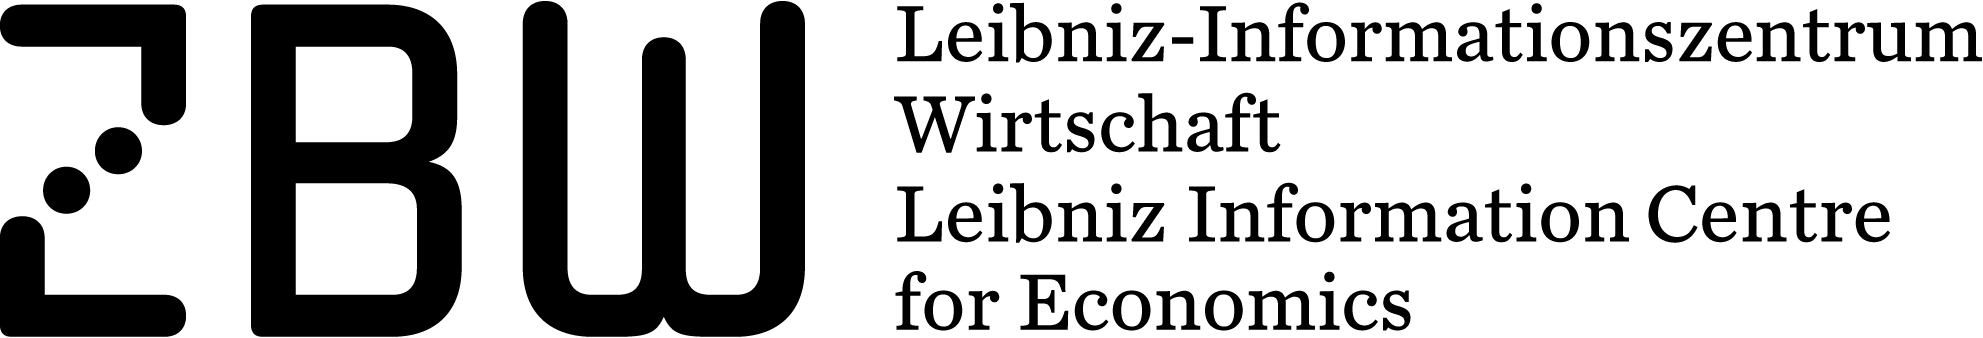 Logo ZBW - Leibniz-Informationszentrum Wirtschaft